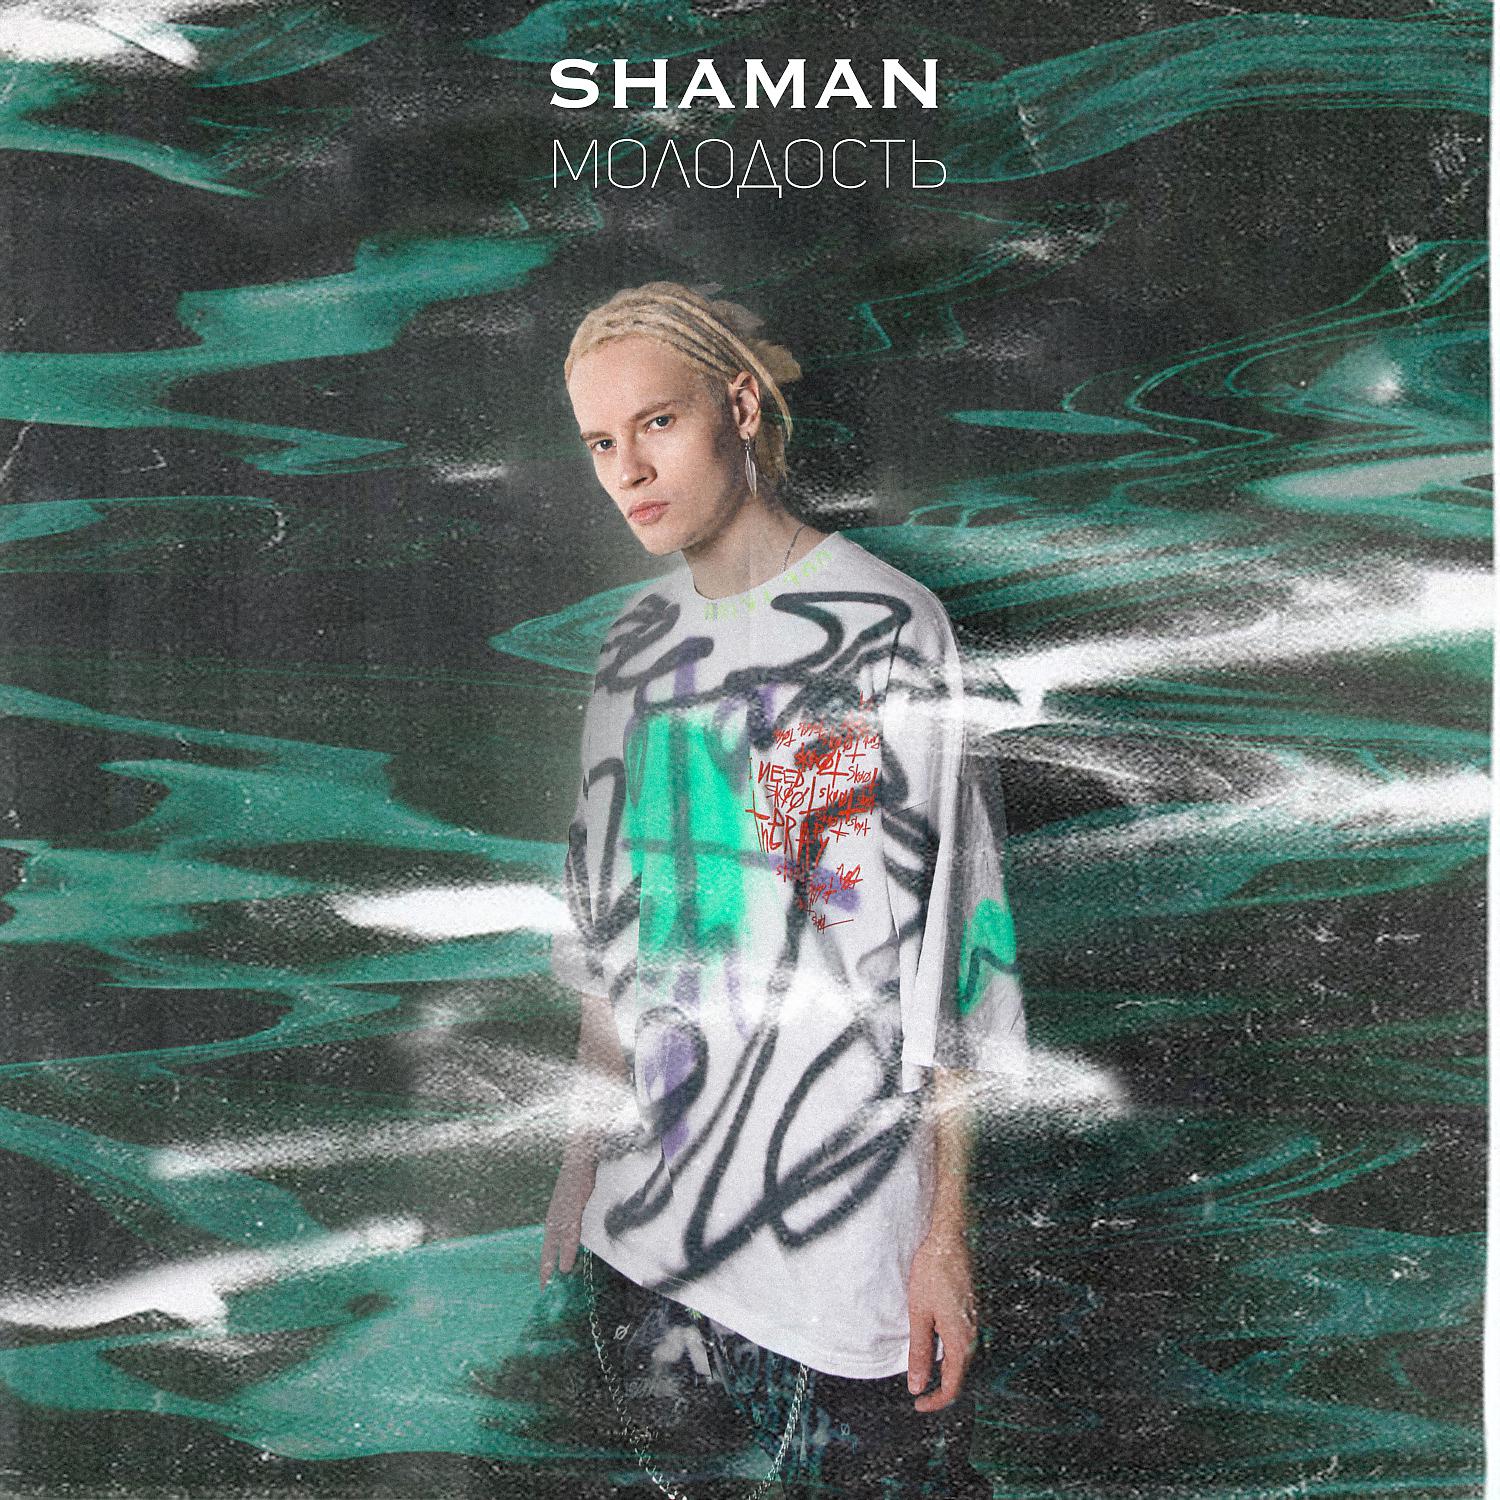 Shaman (певец). Shaman в молодости. Shaman певец в молодости. Шаман моя молодость.